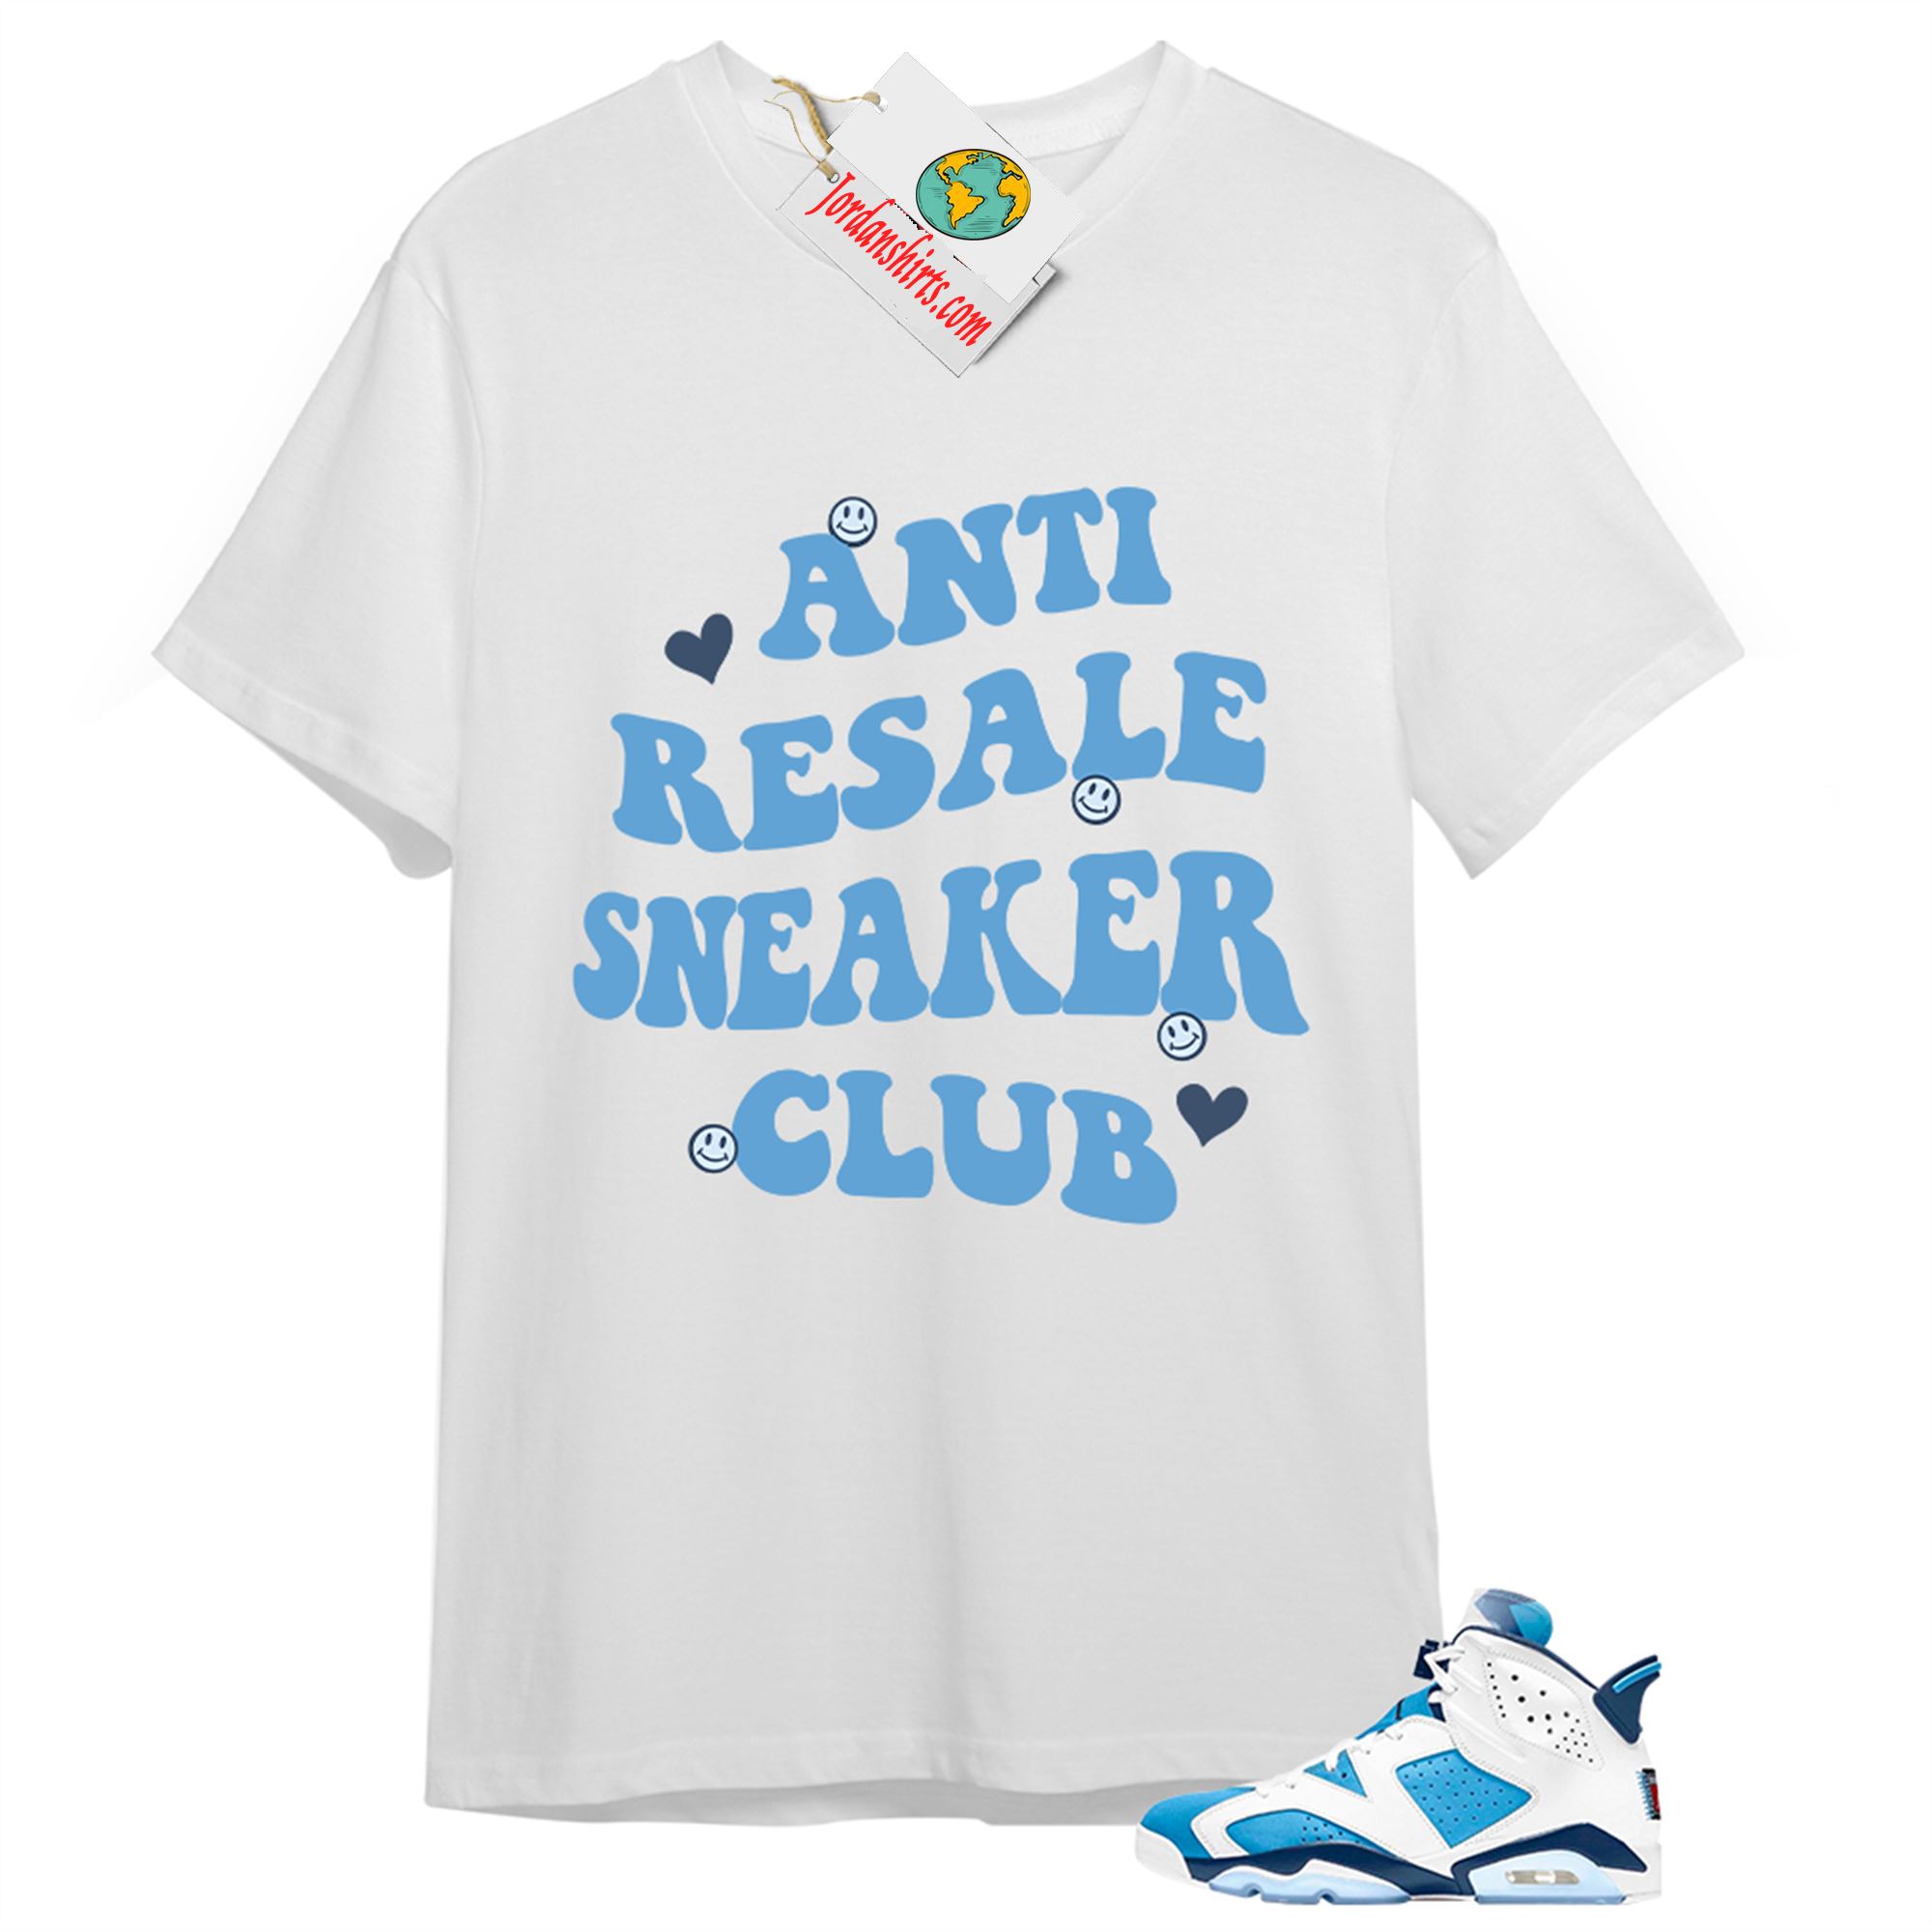 Jordan 6 Shirt, Anti Resale Sneaker Club White T-shirt Air Jordan 6 Unc 6s Plus Size Up To 5xl